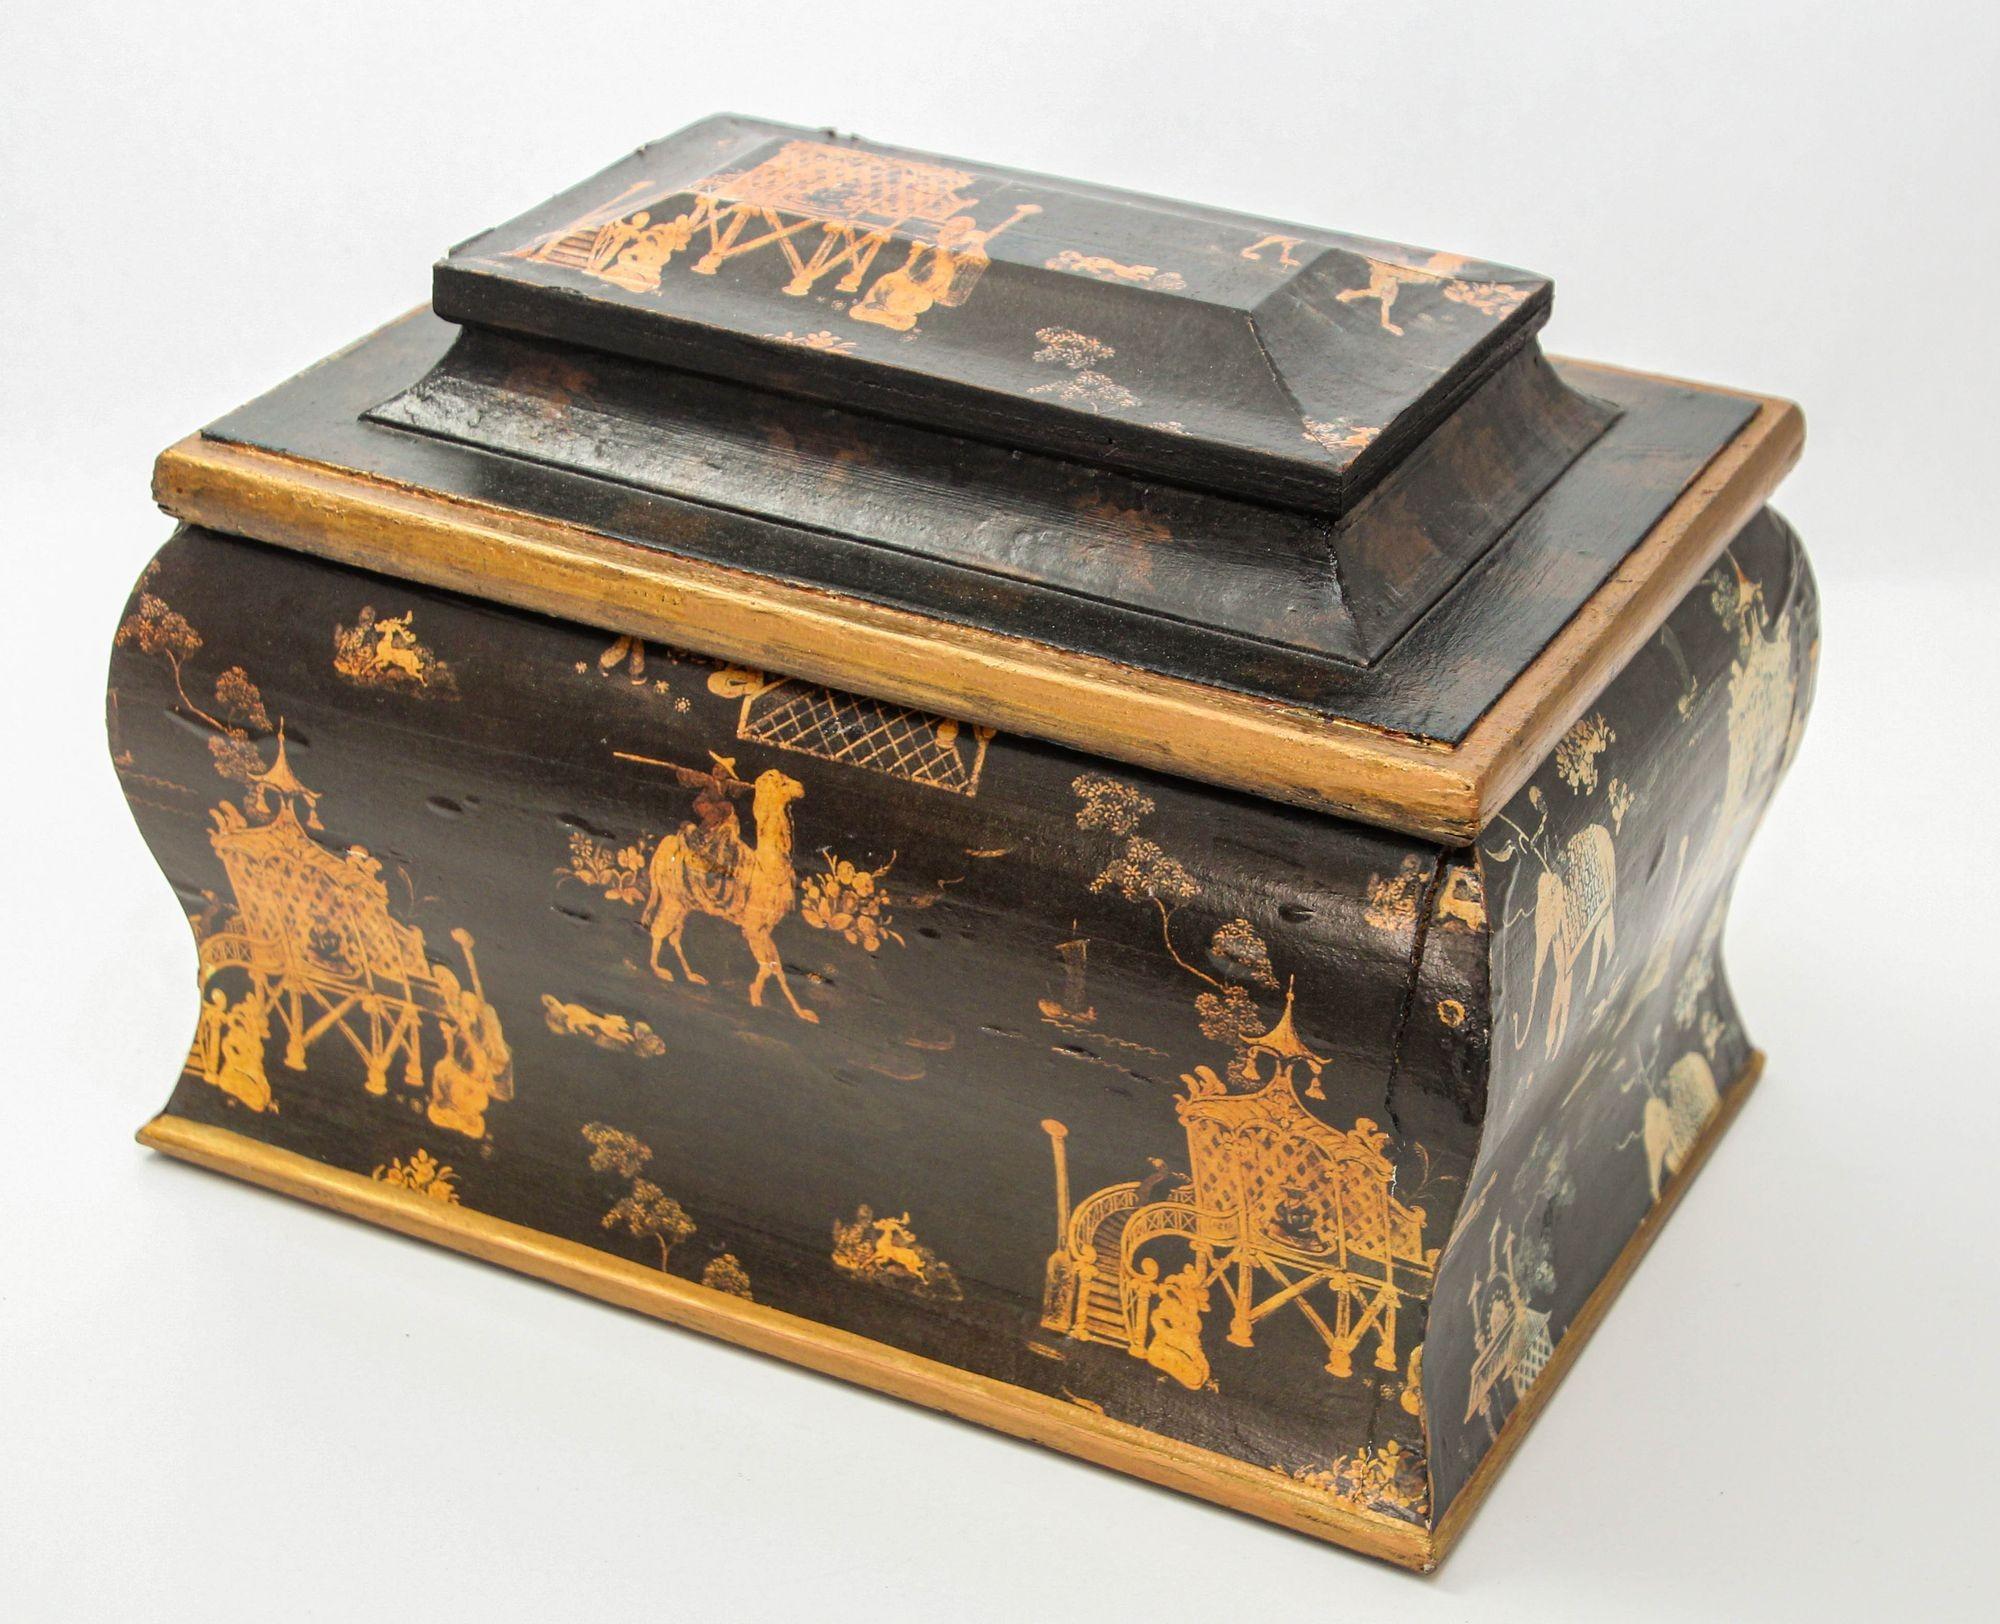 Cette boîte à bijoux anglaise de l'époque Regency incarne l'esthétique orientale avec sa forme élégante de sarcophage, son corps effilé et son couvercle angulaire. Le couvercle est orné de scènes chinoises complexes représentées à la plume sur